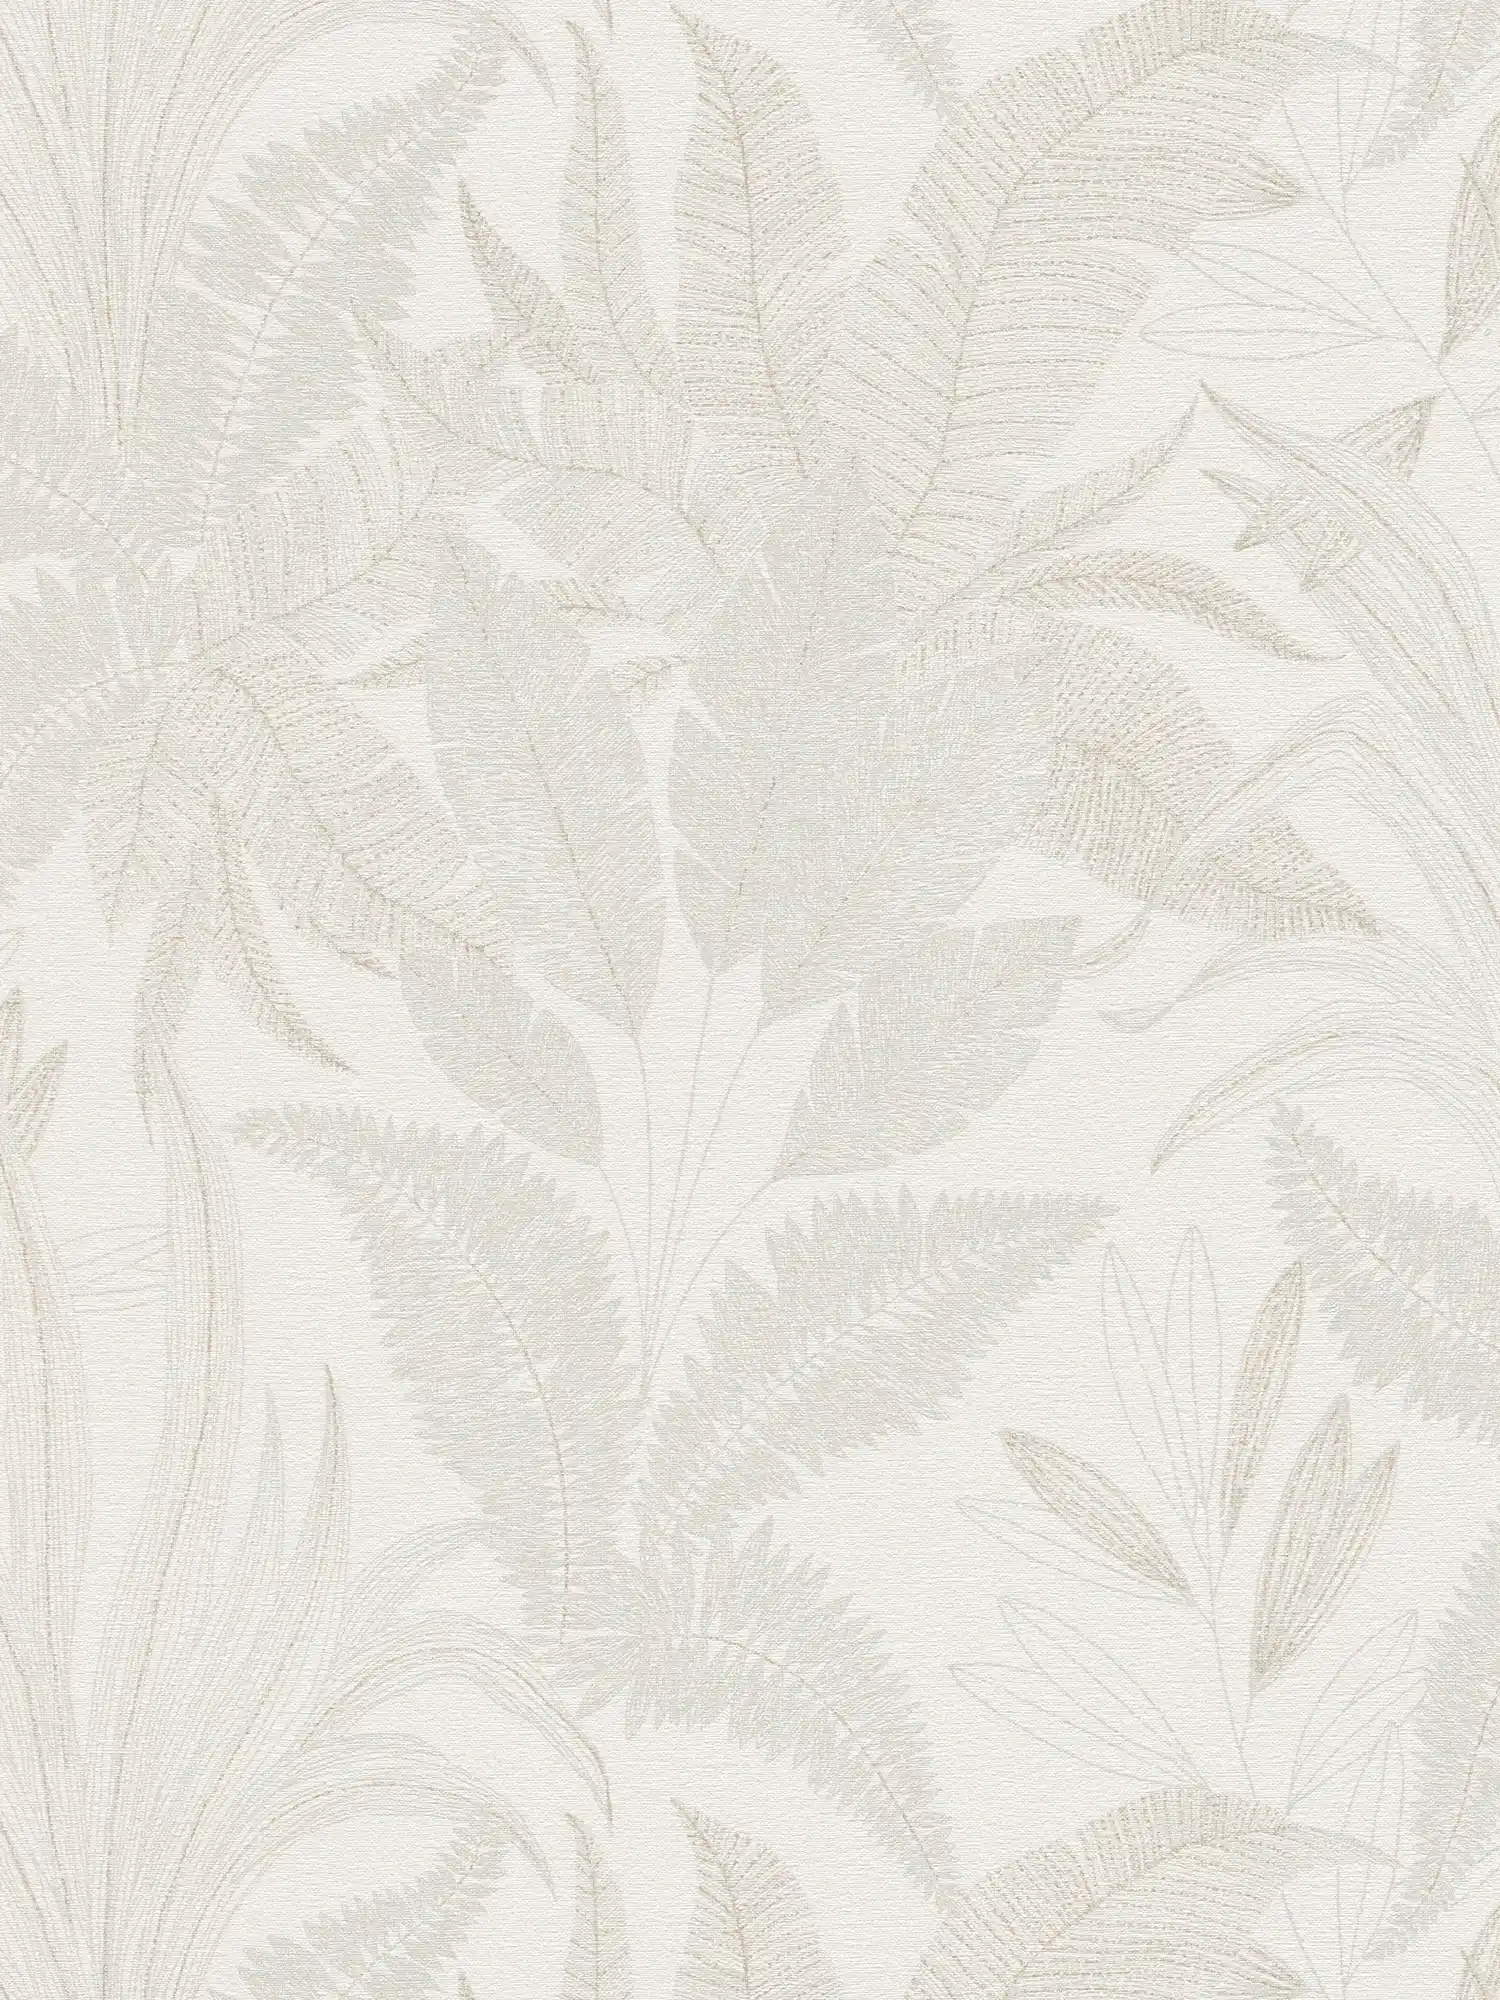 Papel pintado tejido-no tejido floral con motivo de hojas en colores suaves - crema, beige
